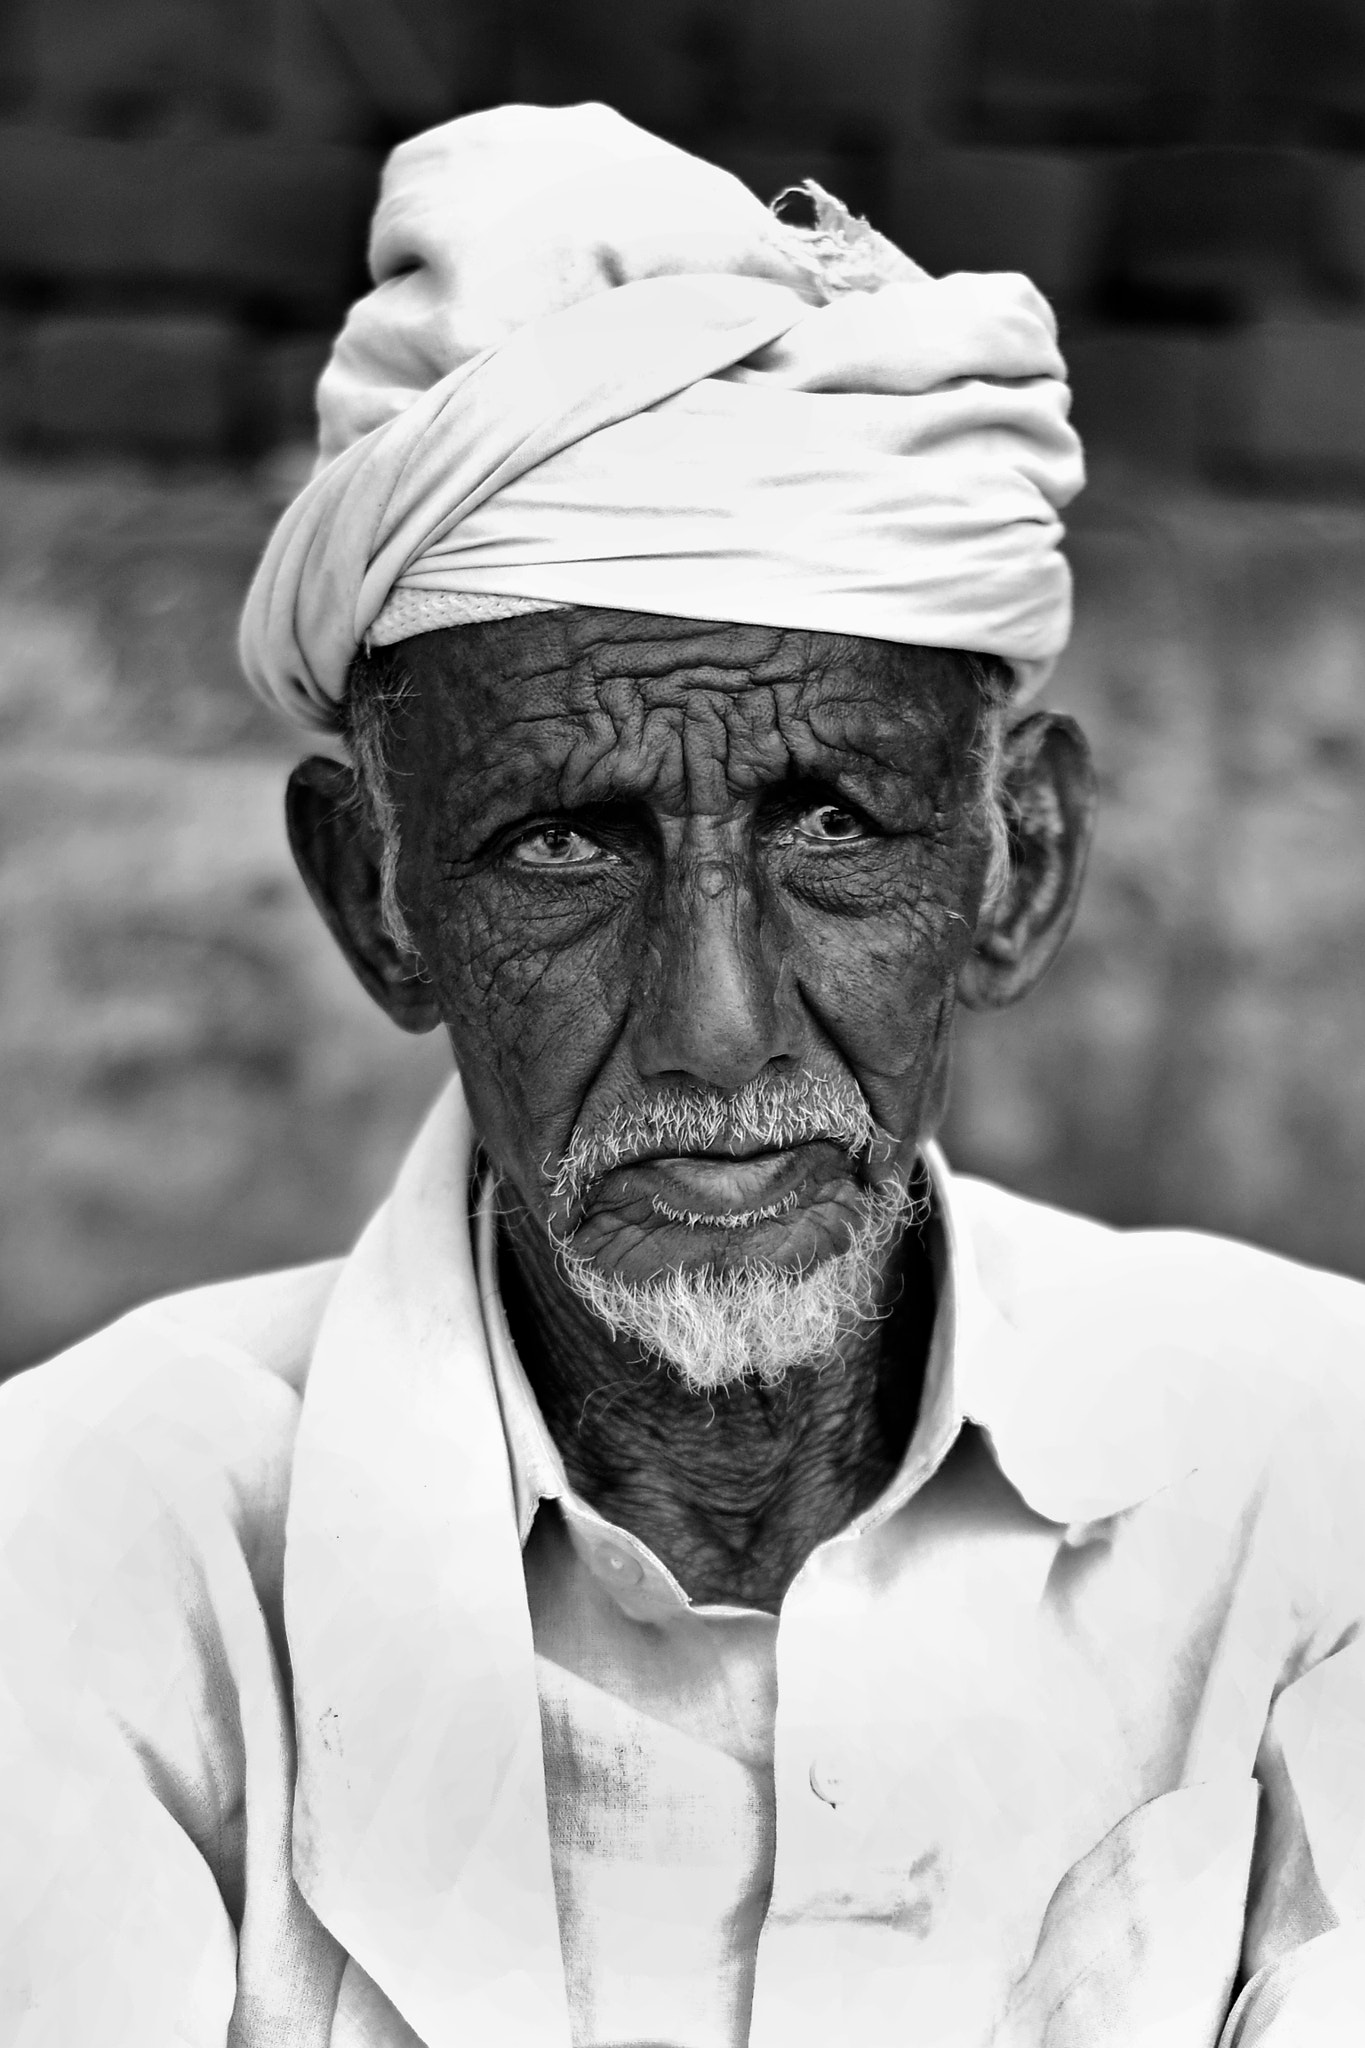 Nikon AF-S Nikkor 400mm F2.8D ED-IF II sample photo. Indian street portrait photography